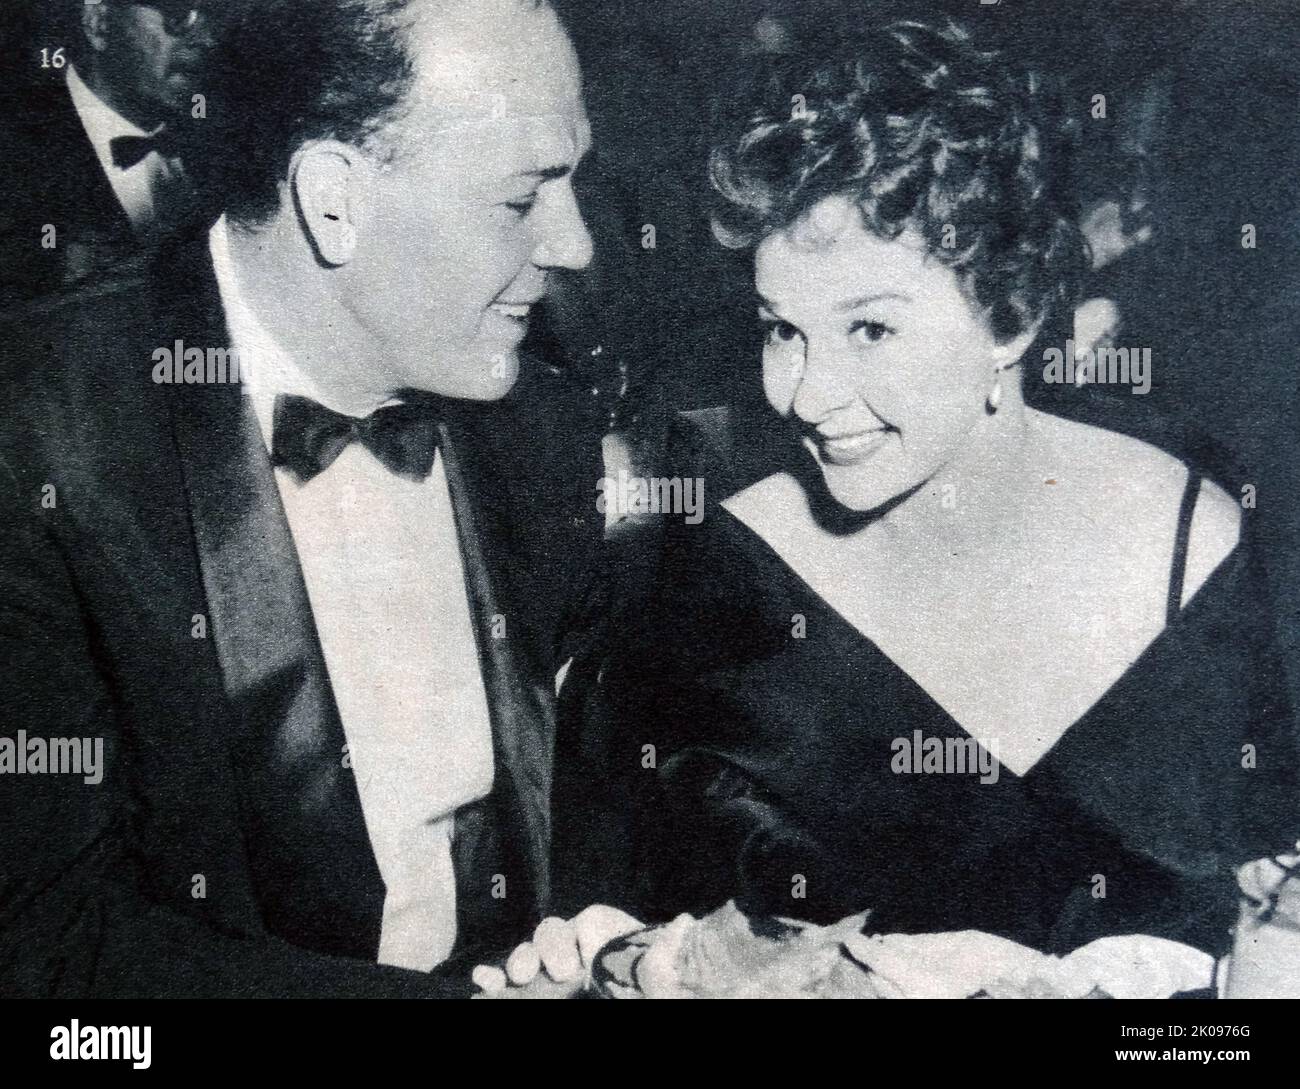 L'actrice Susan Hayward avec son mari Eaton Chalkley. Susan Hayward (née Edythe Marrenner; 30 juin 1917 - 14 mars 1975) était une actrice et mannequin américaine. Elle était surtout connue pour ses représentations cinématographiques de femmes qui étaient basées sur de vraies histoires. Banque D'Images